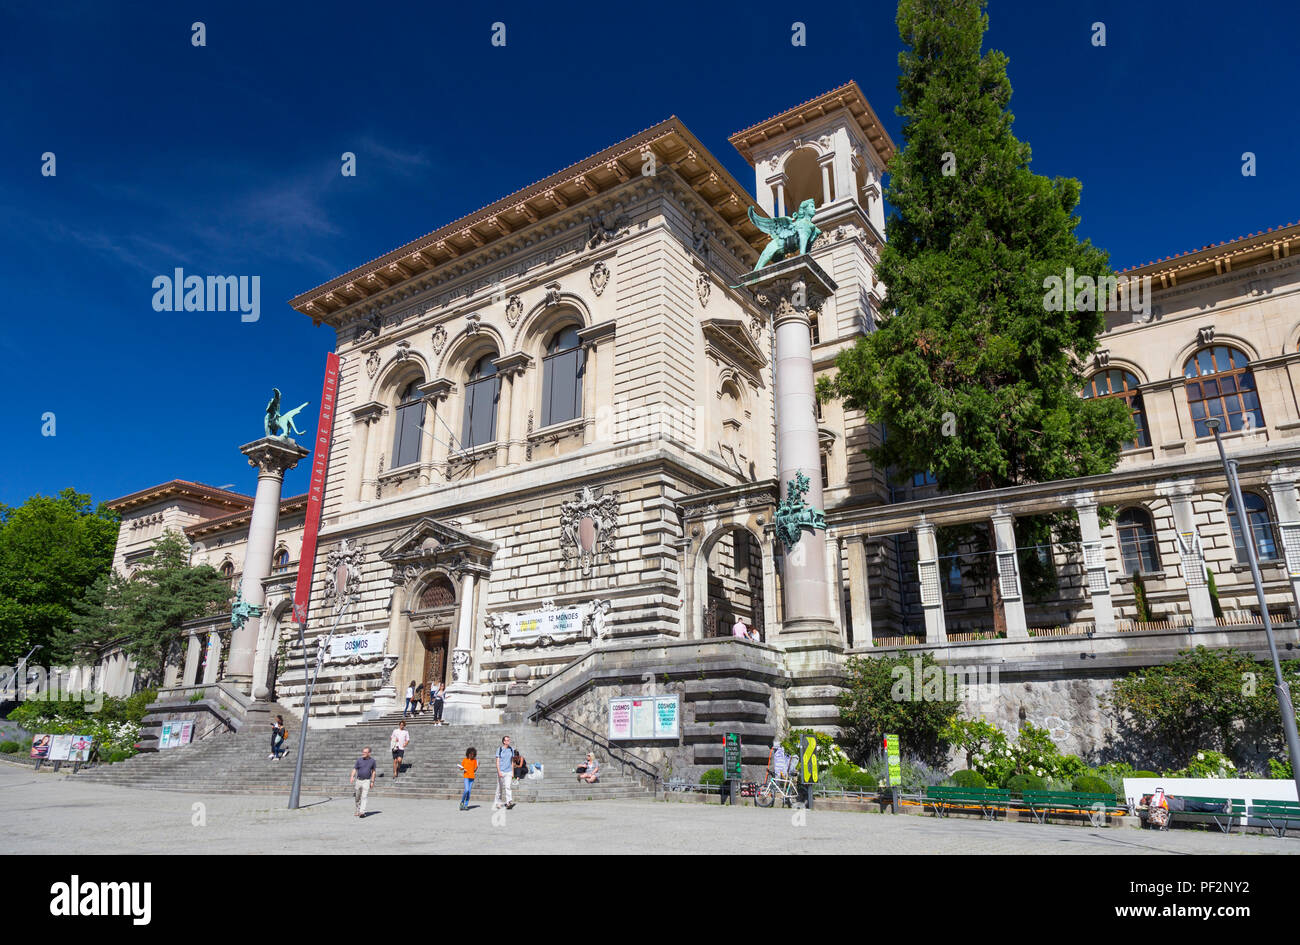 Palais de Rumine on the Place de la Riponne, Lausanne, Switzerland Stock Photo